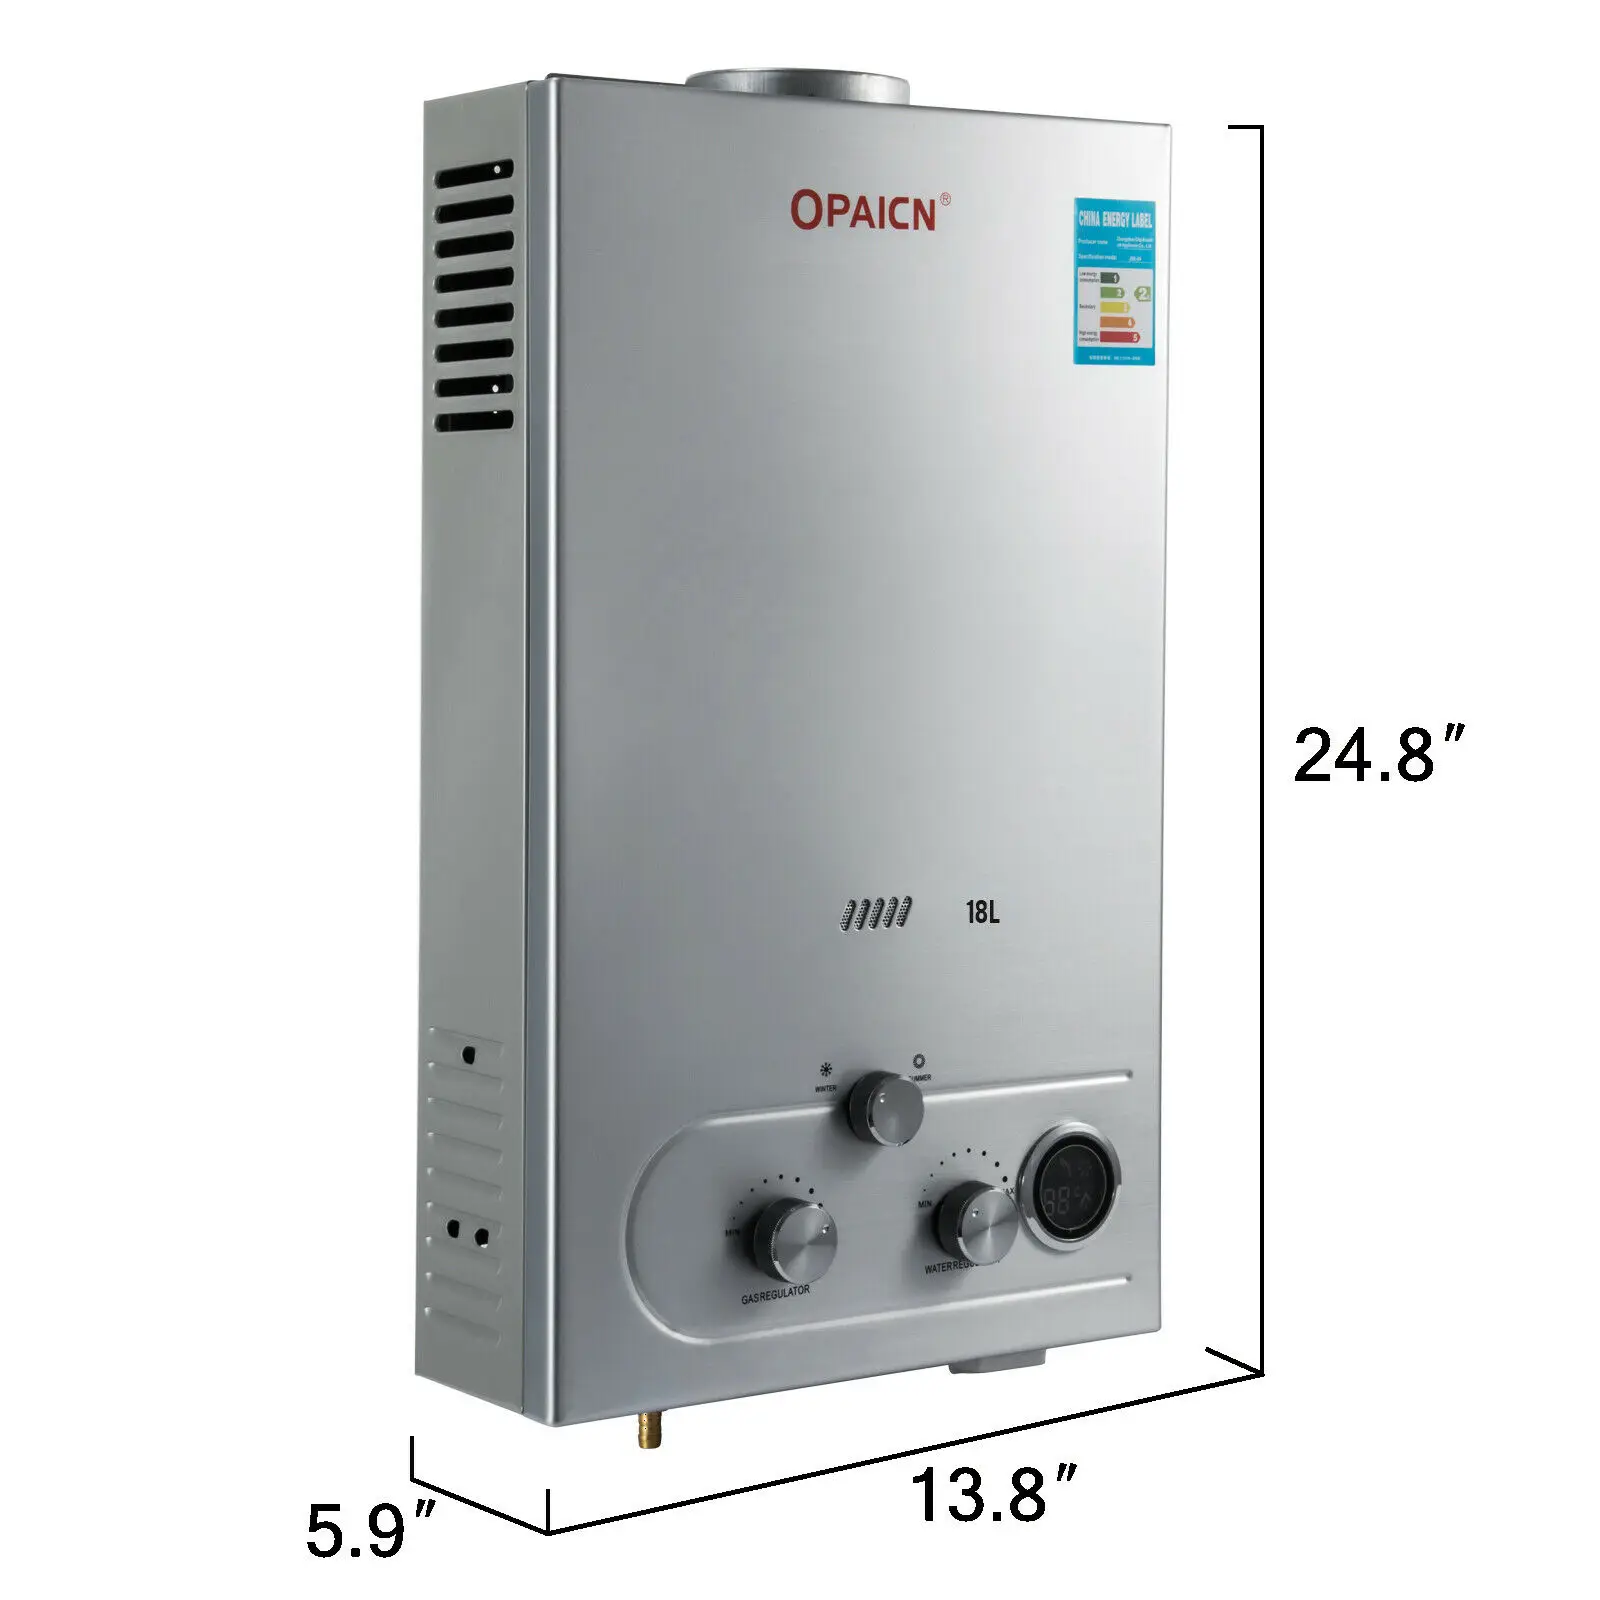 18L LPG Durchlauferhitzer Propangas Warmwasserbereiter Boiler Warmwasserspeicher 